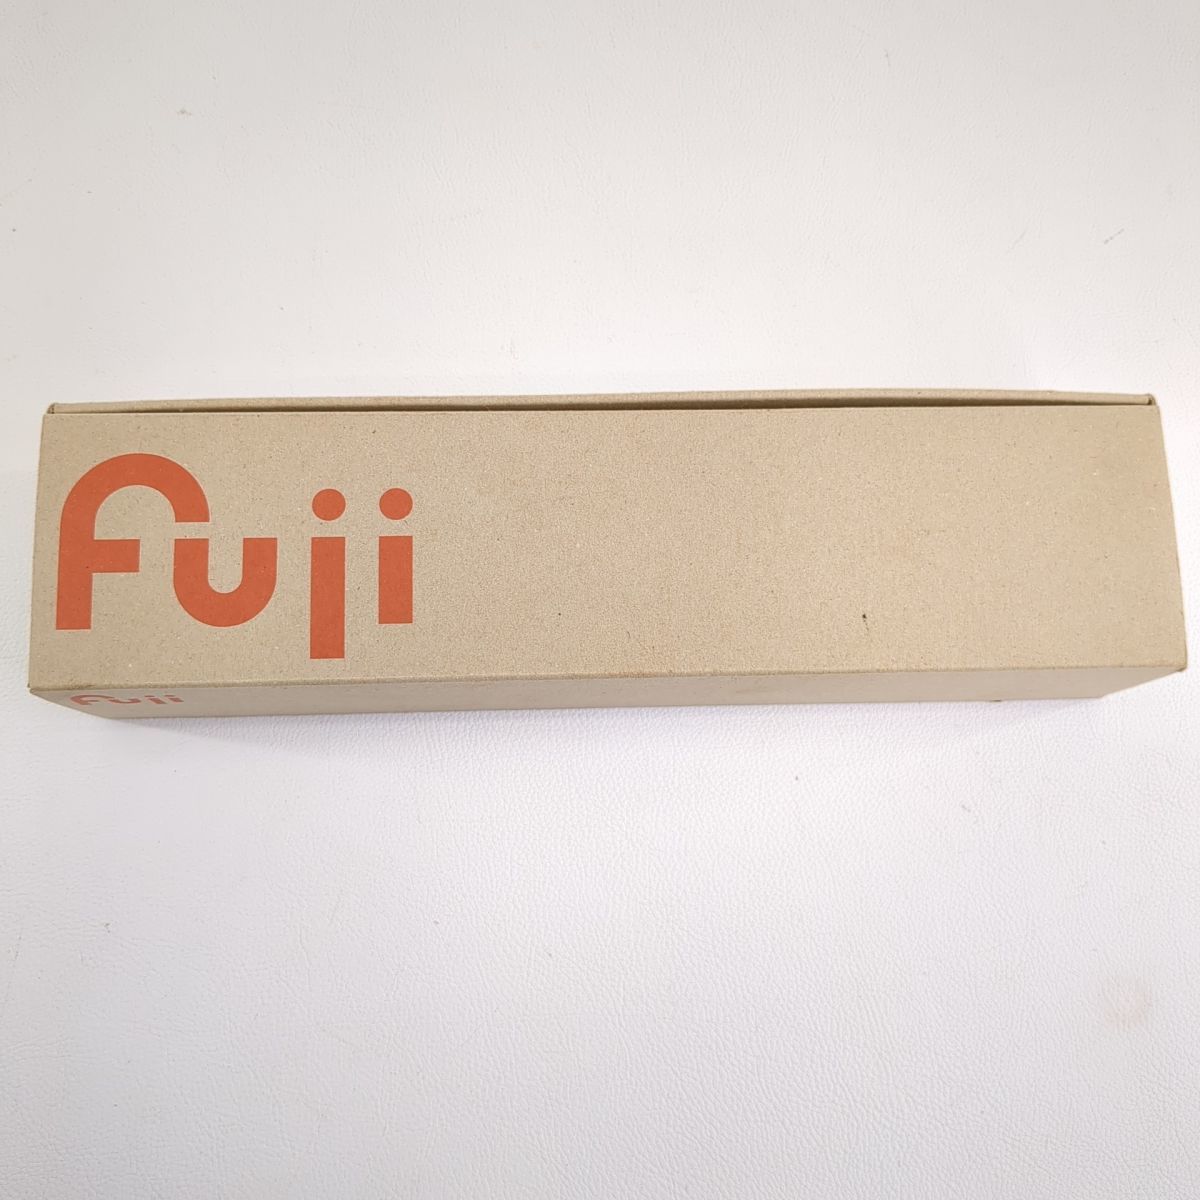 [ не использовался товар ]FUJI Fuji пустой машина длина ось type распорка шлифовщик пневматическая шлифовальная машина FG-26HL-2 *3102/. река магазин 